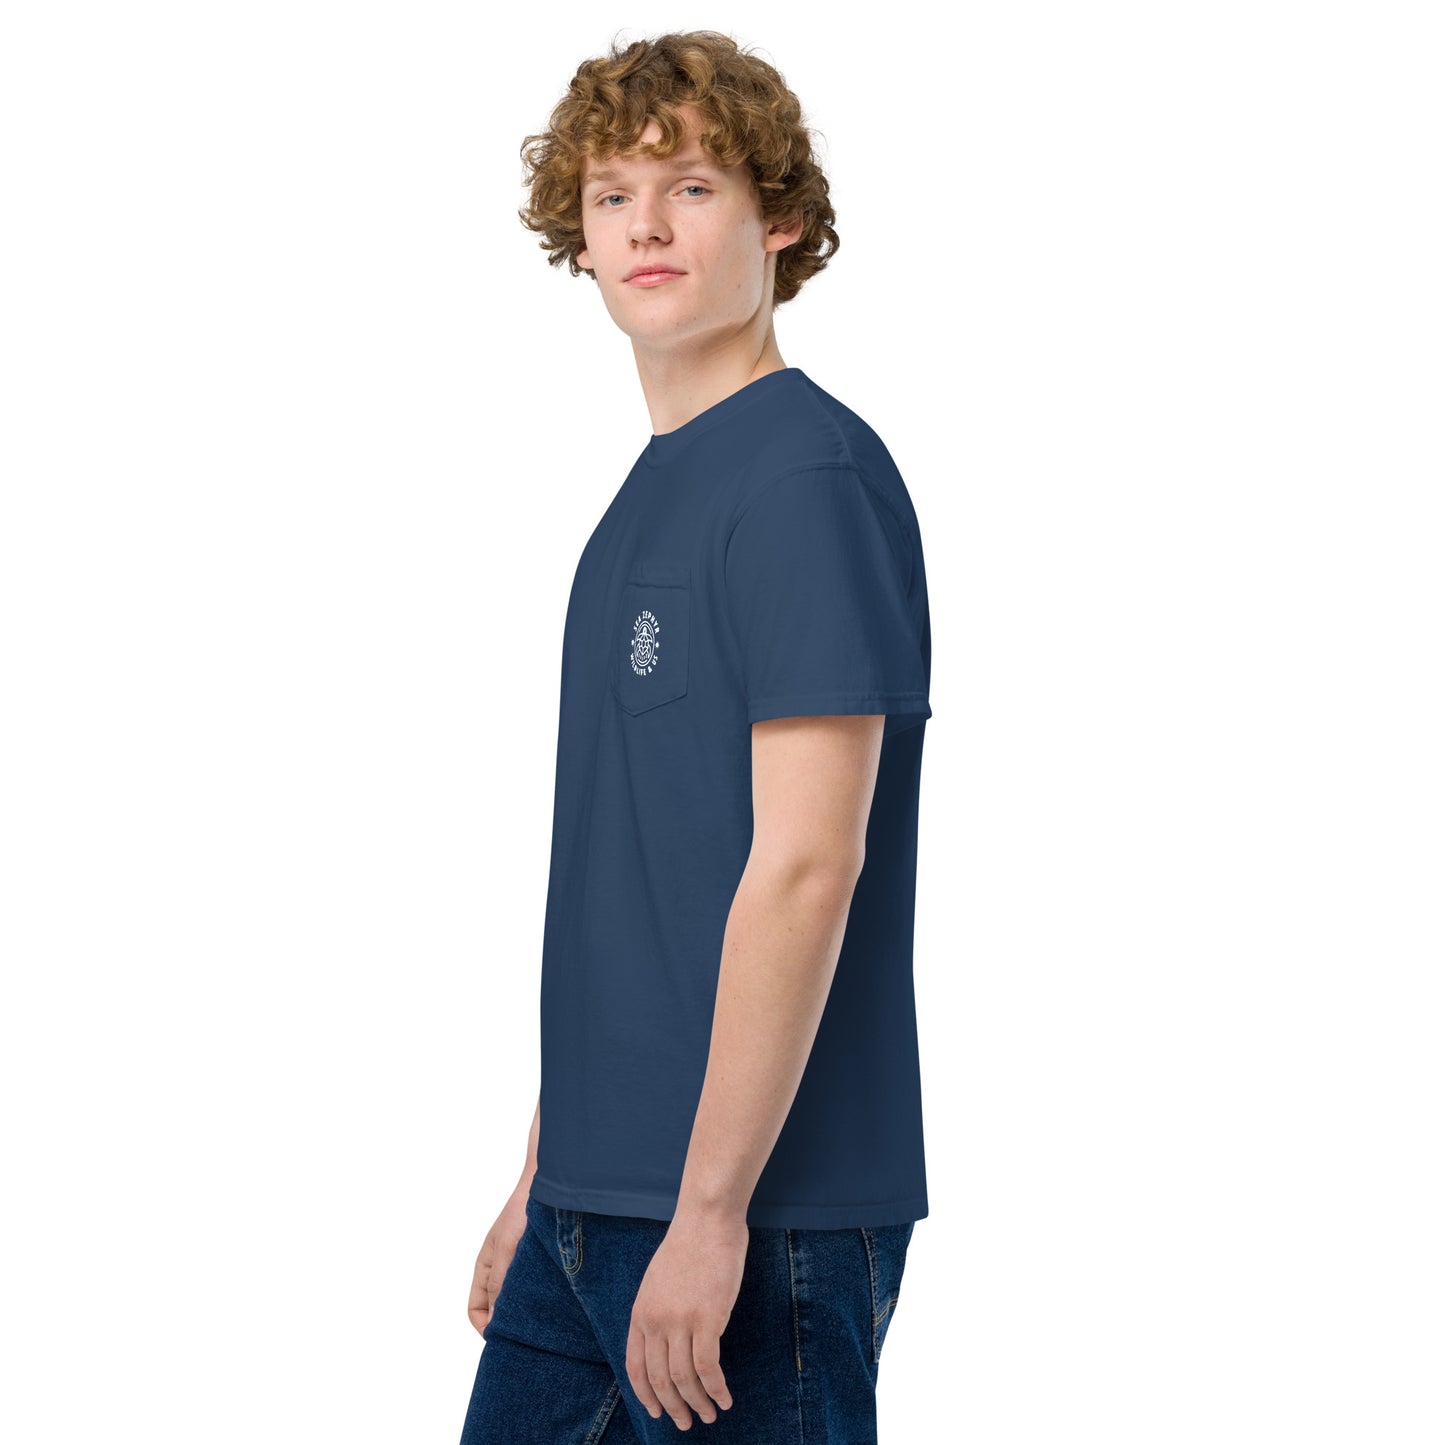 Sea Zephyr unisex garment-dyed pocket t-shirt - navy blue